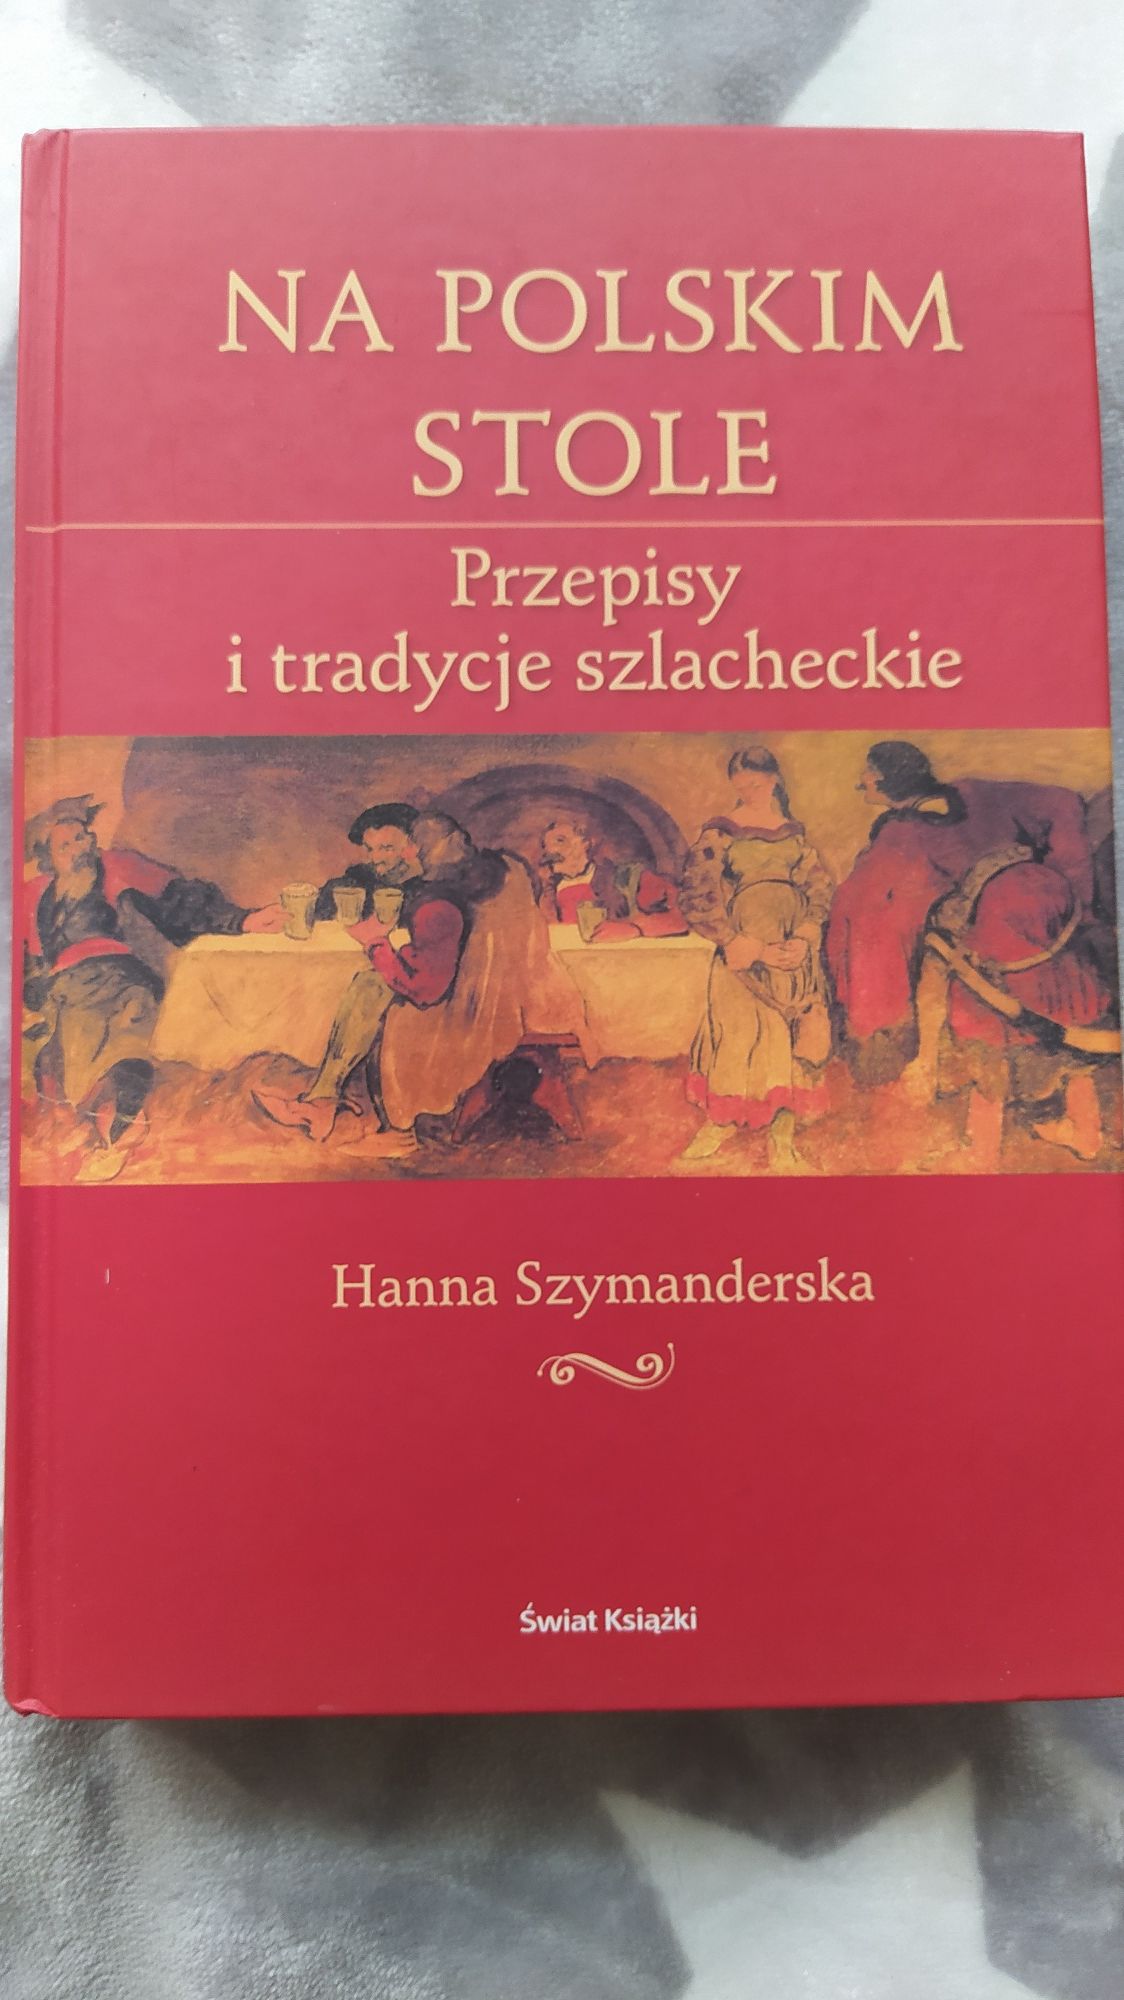 Na polskim stole przepisy i tradycje szlacheckie Hanna Szymanderska